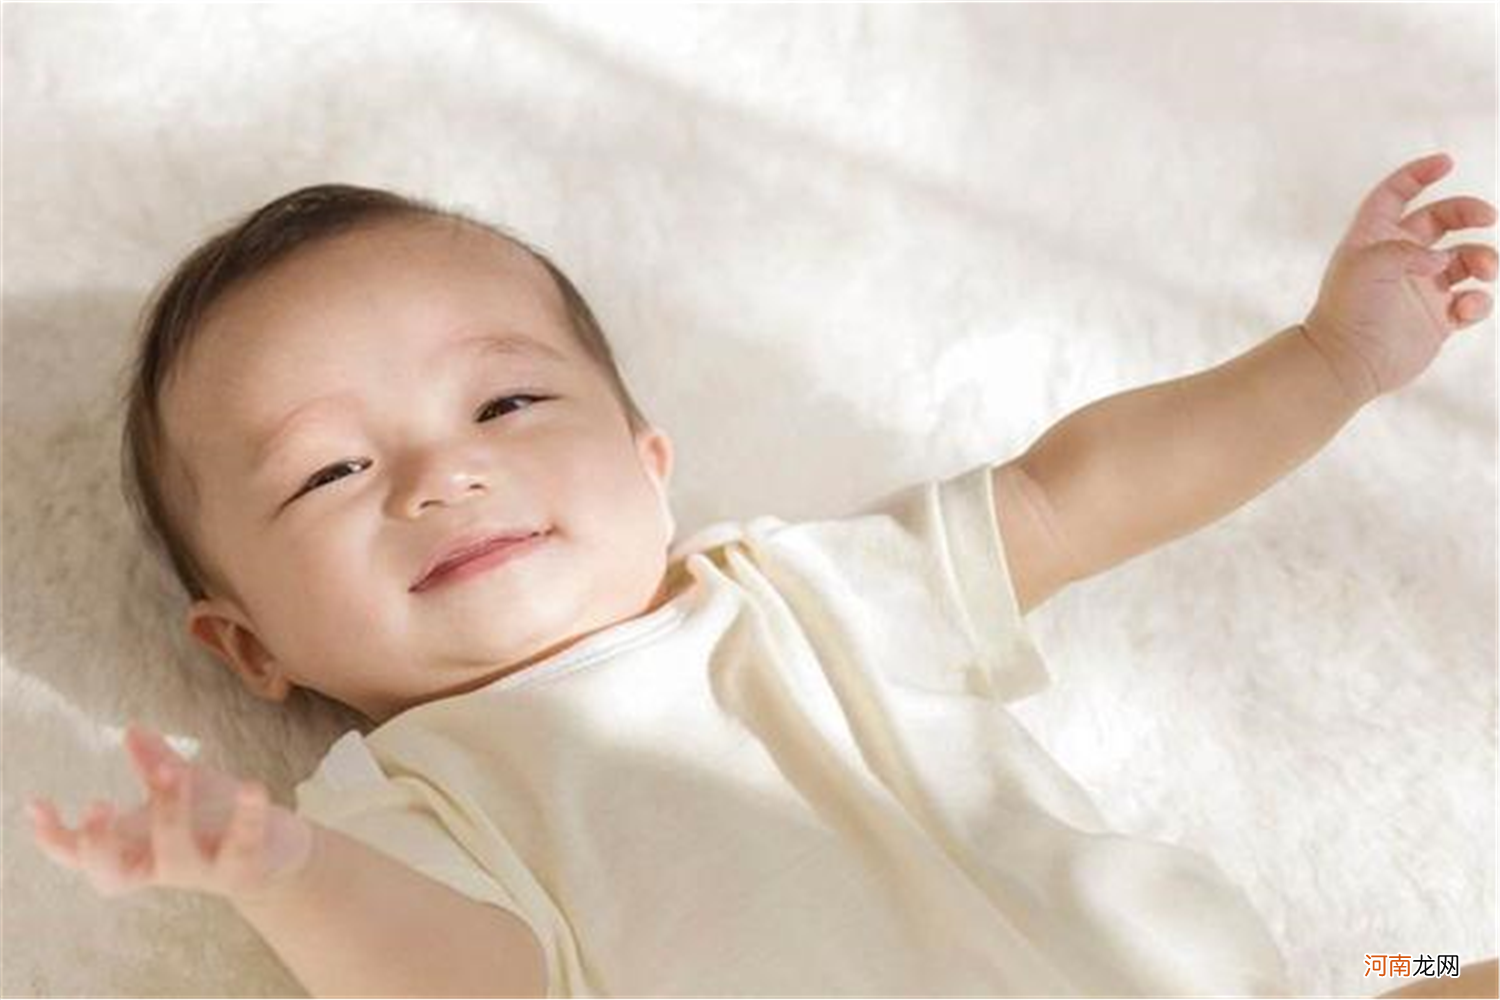 宝宝经常胀气吐奶，如何照顾好宝宝娇嫩的肠胃呢？辅食营养是关键